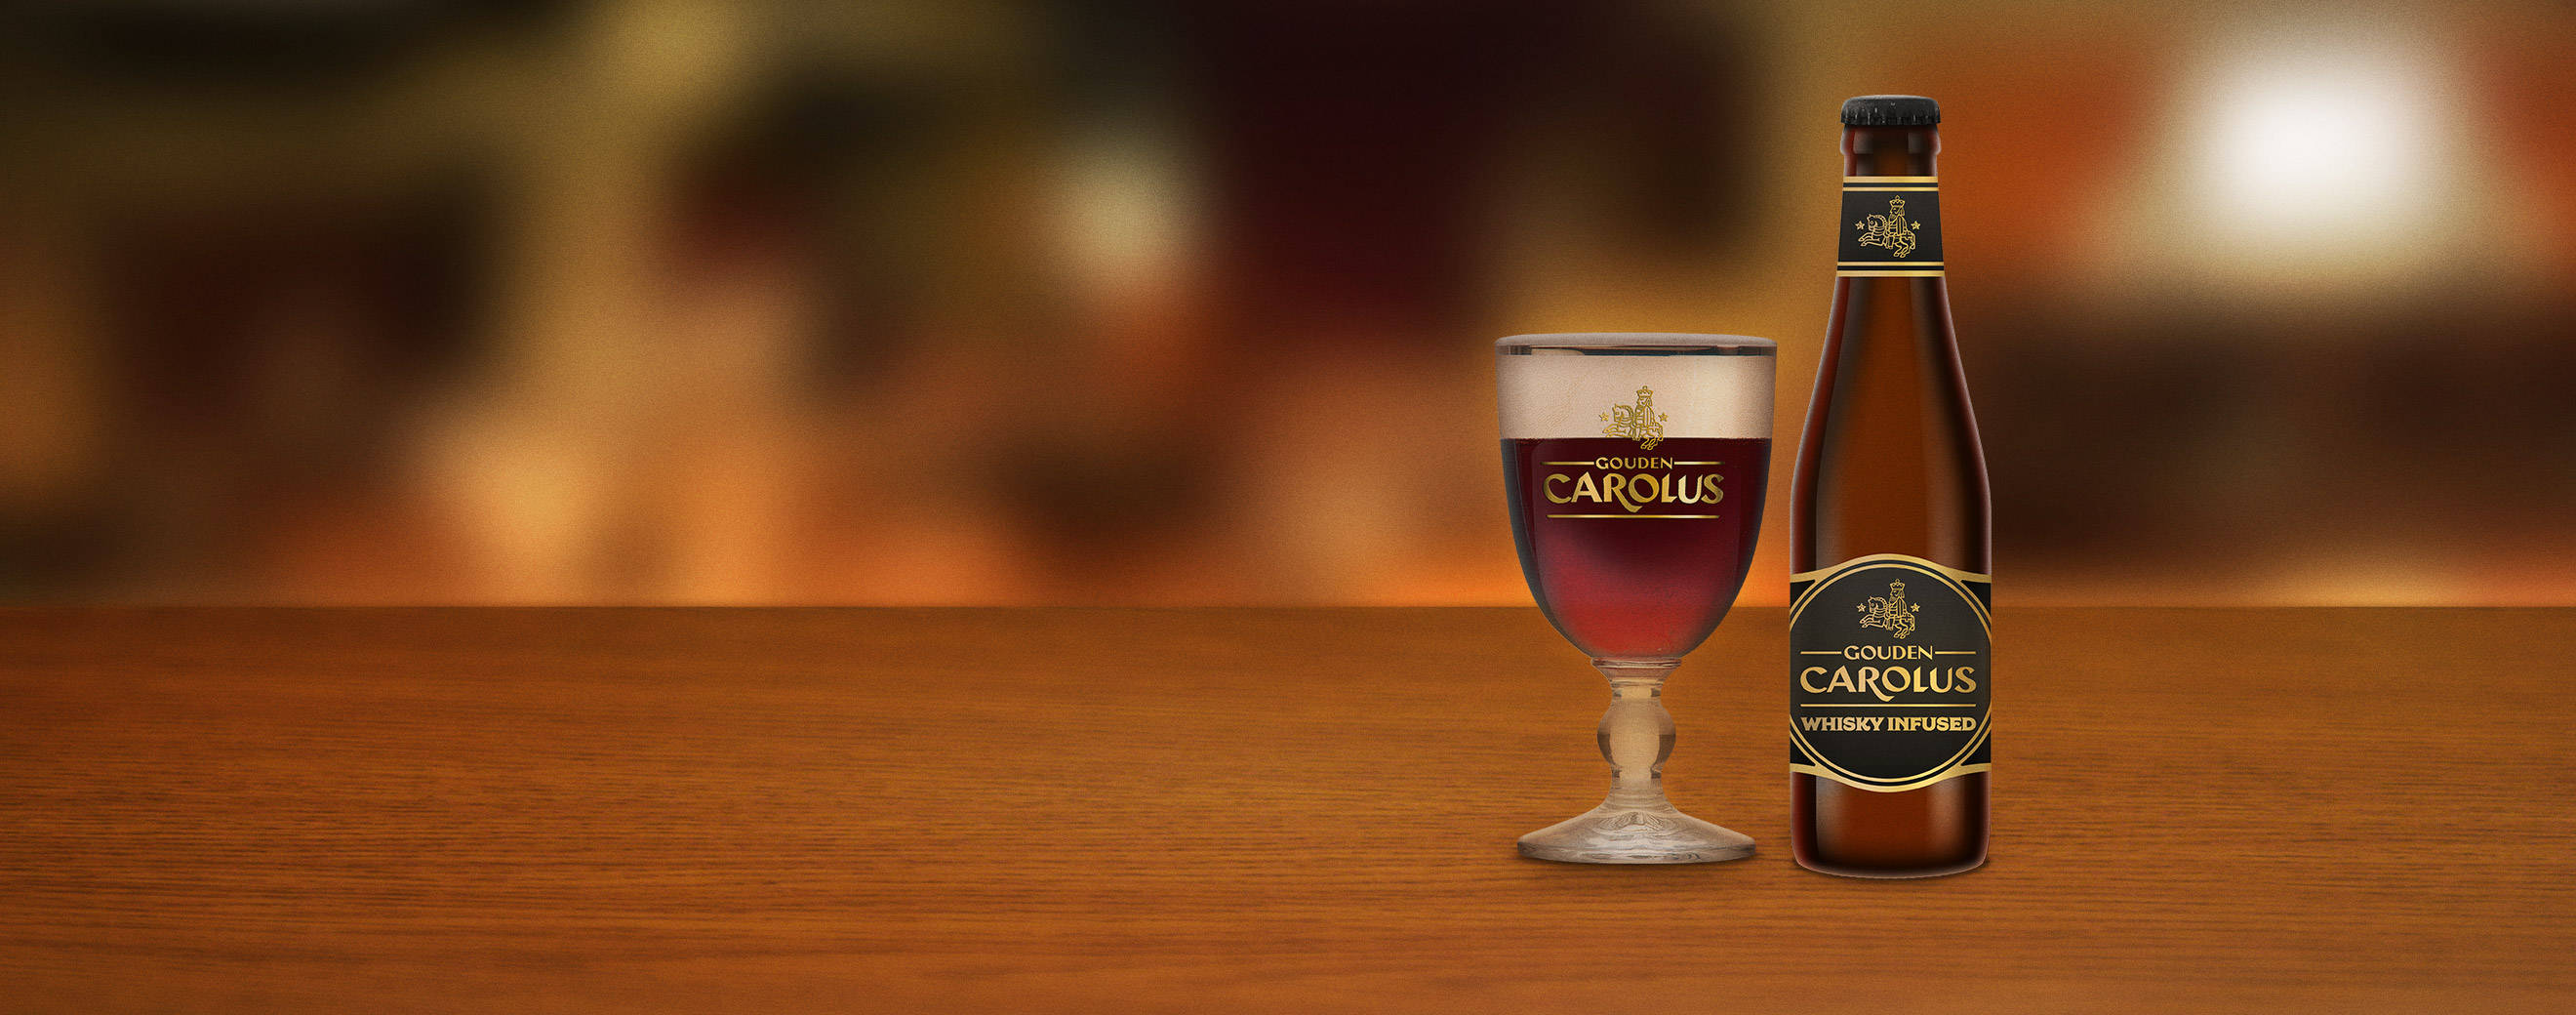 Gouden Carolus Whisky Infused met glas